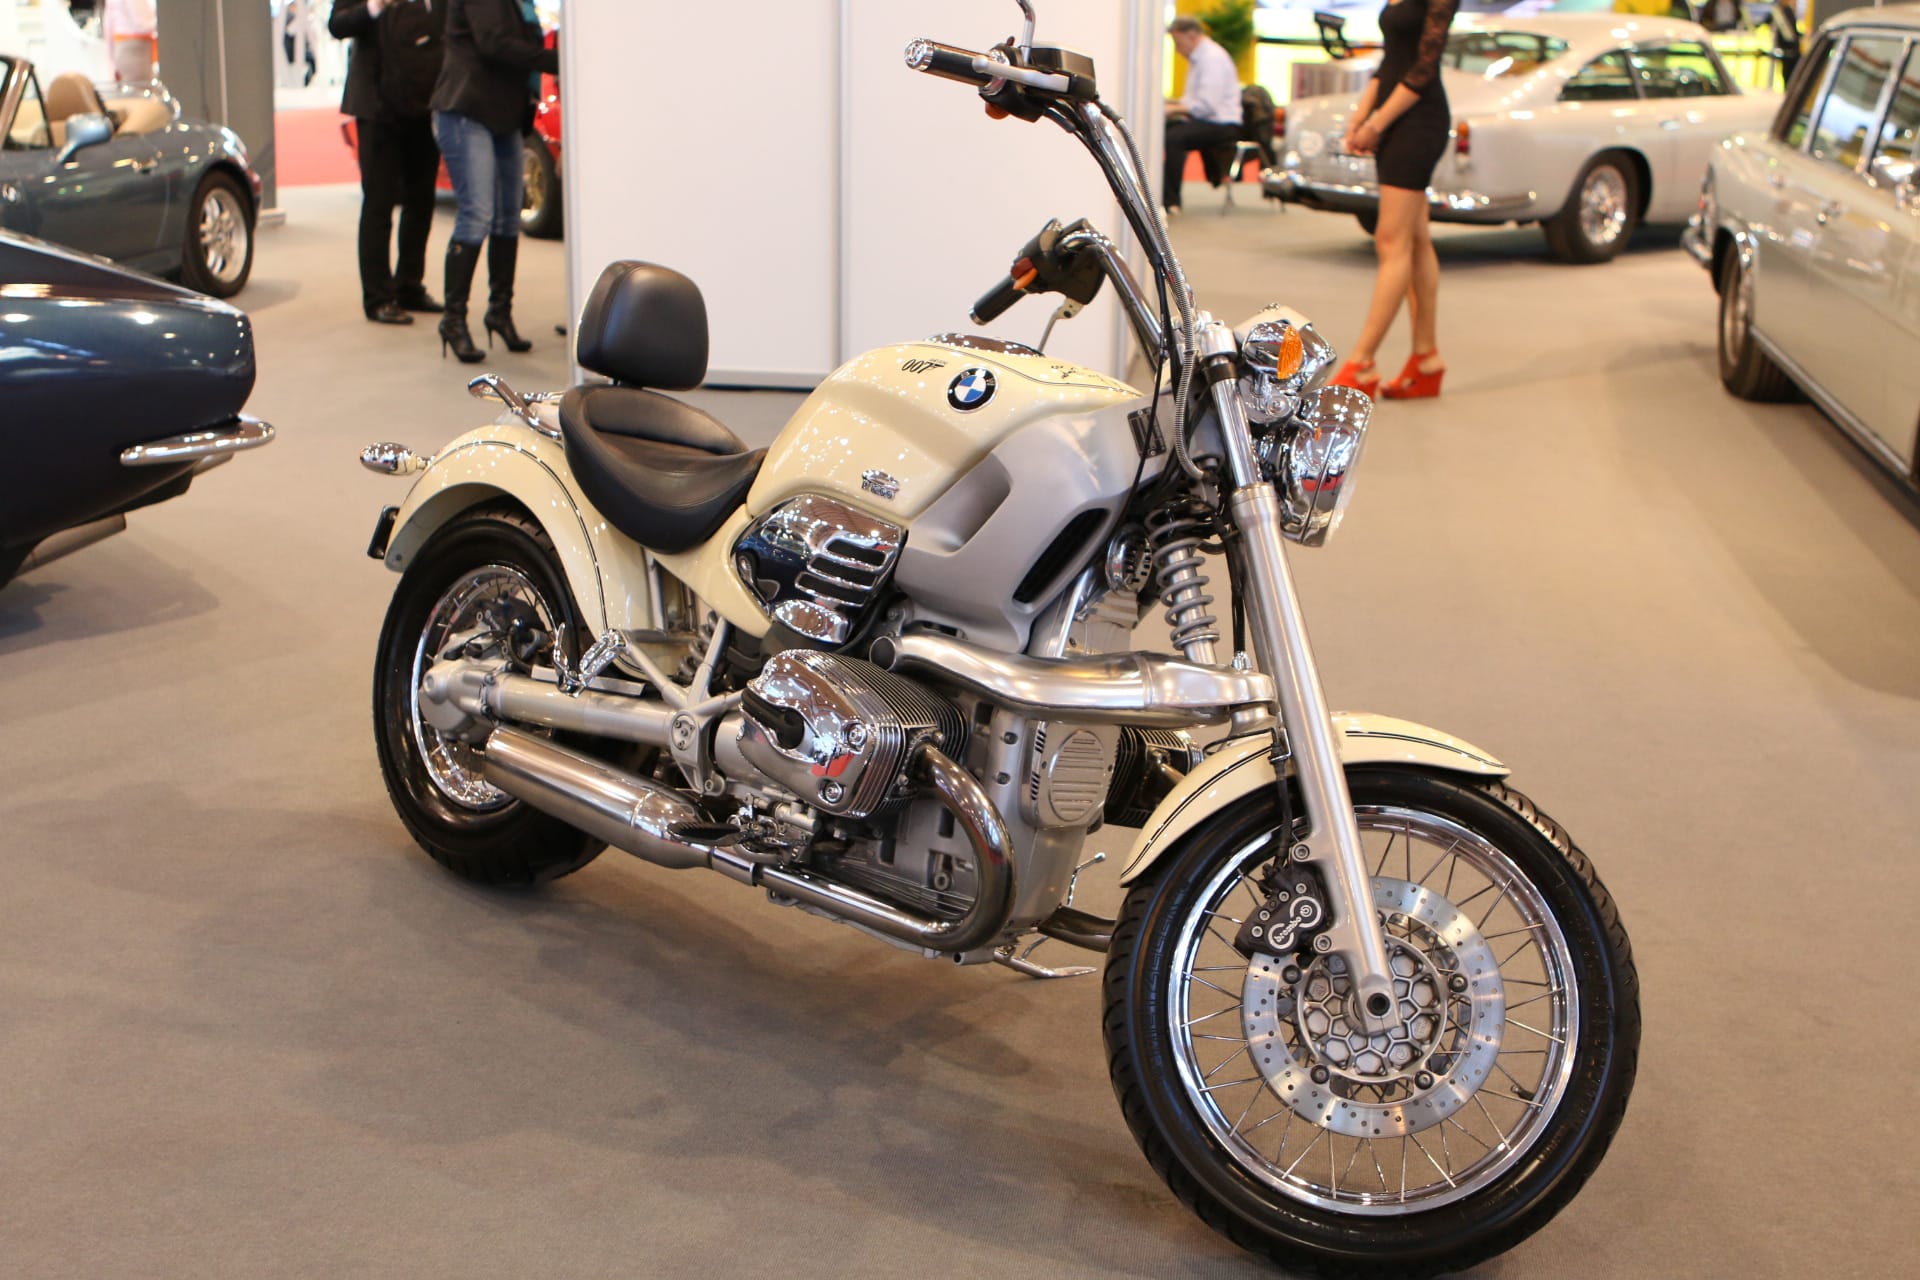 Das BMW-Motorrad R 1200 C wurde in "Der Morgen stirbt nie" (1997) von Bond für eine Verfolgungsjagd gestohlen.